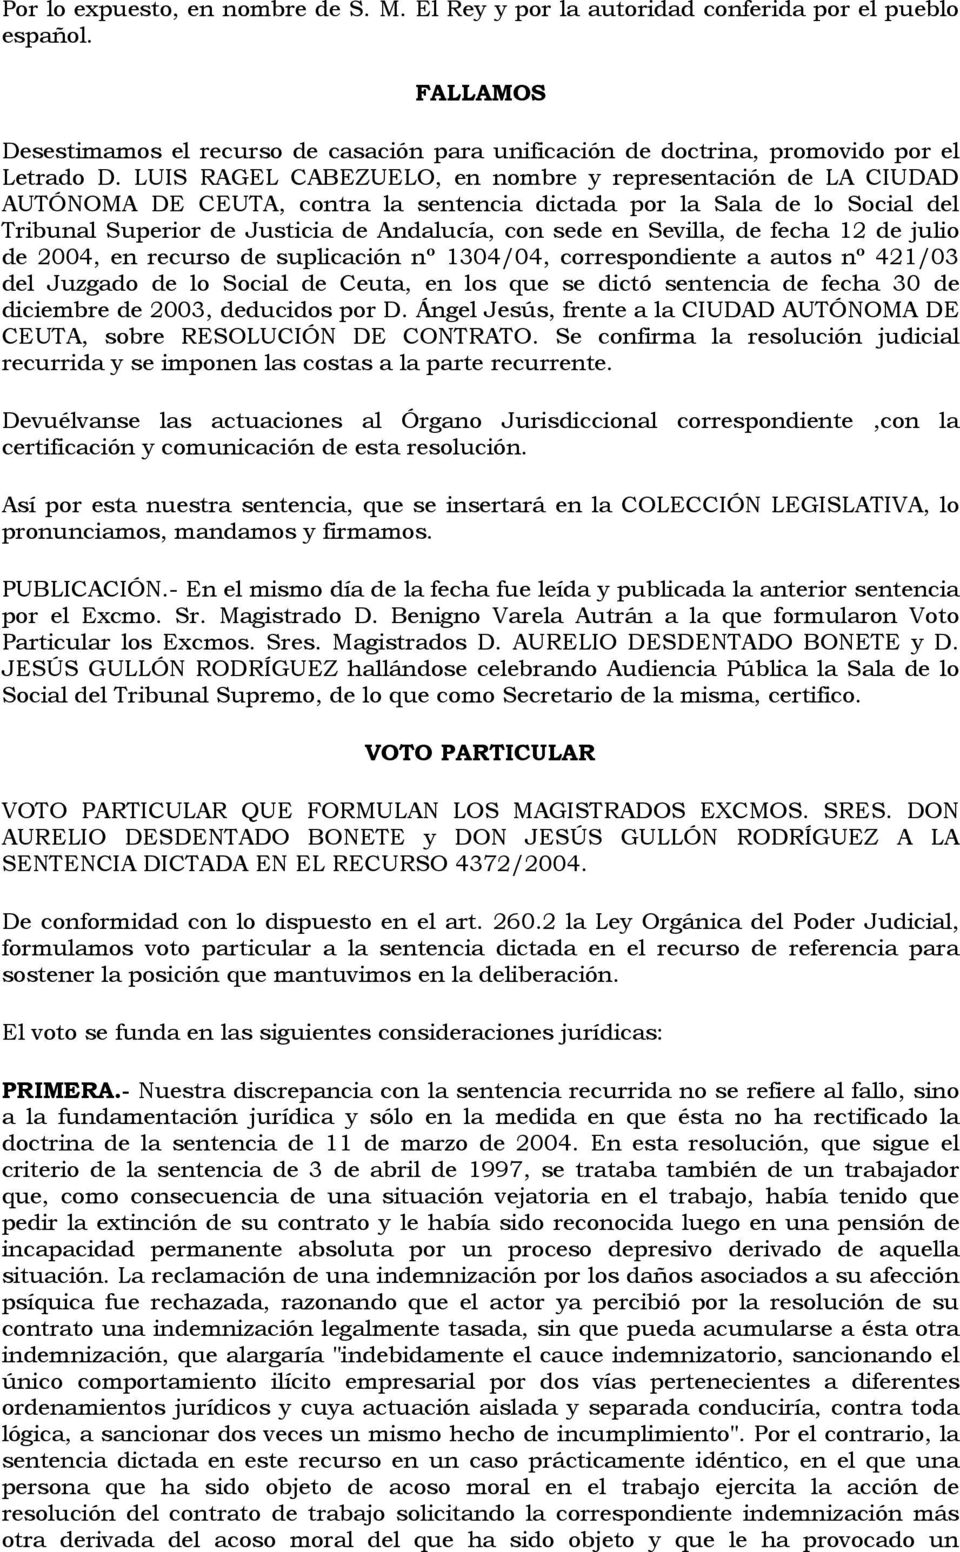 Sevilla, de fecha 12 de julio de 2004, en recurso de suplicación nº 1304/04, correspondiente a autos nº 421/03 del Juzgado de lo Social de Ceuta, en los que se dictó sentencia de fecha 30 de